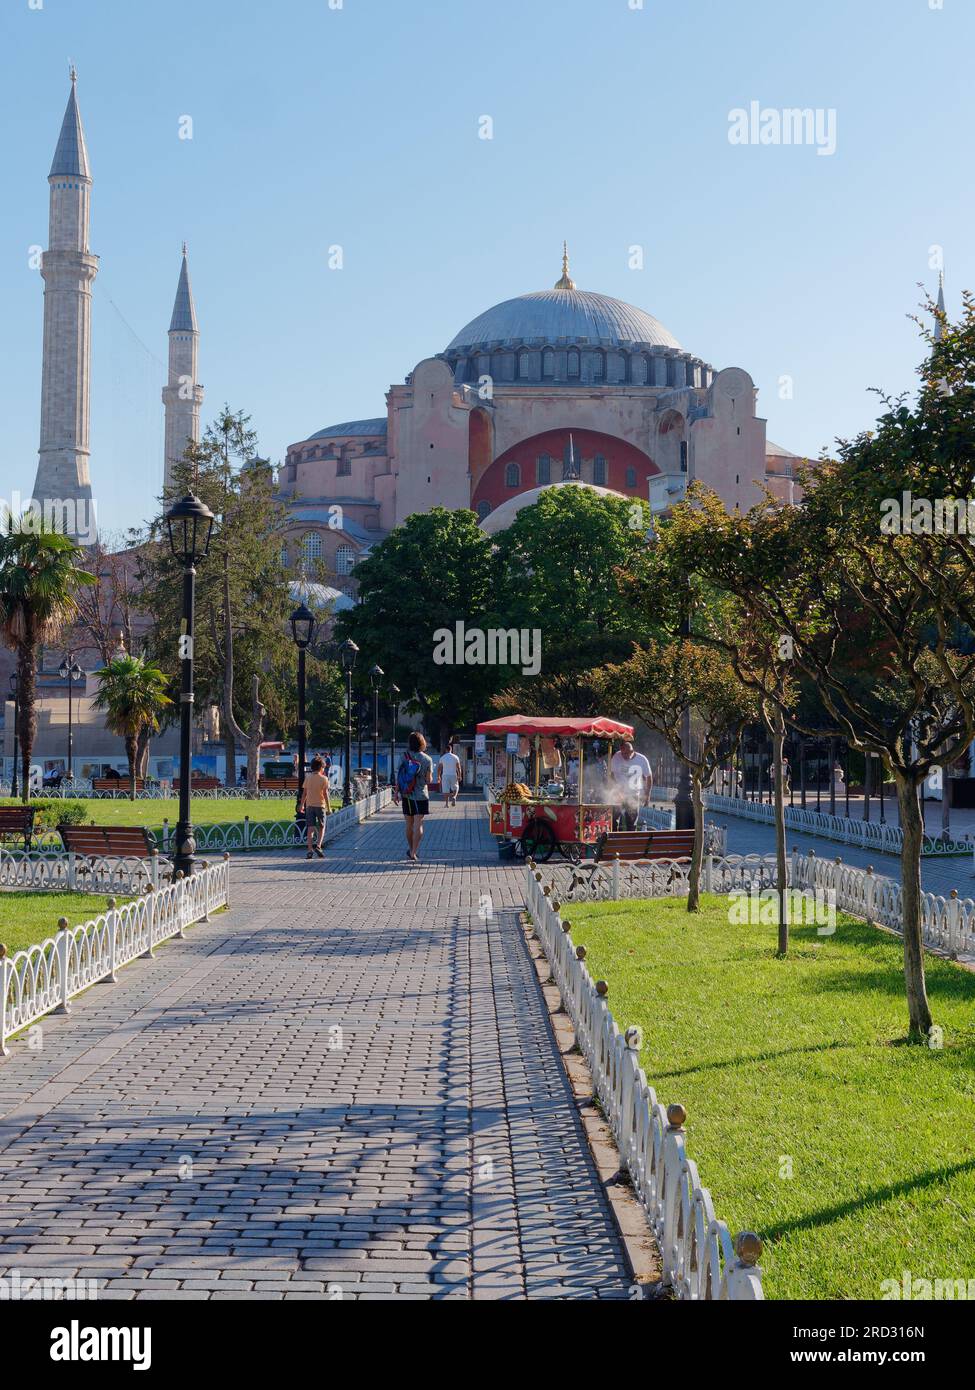 Jardins du parc Sultanahmet avec la mosquée Sainte-Sophie. Le chariot distributeur rouge vend du maïs rôti. Istanbul, Turquie Banque D'Images